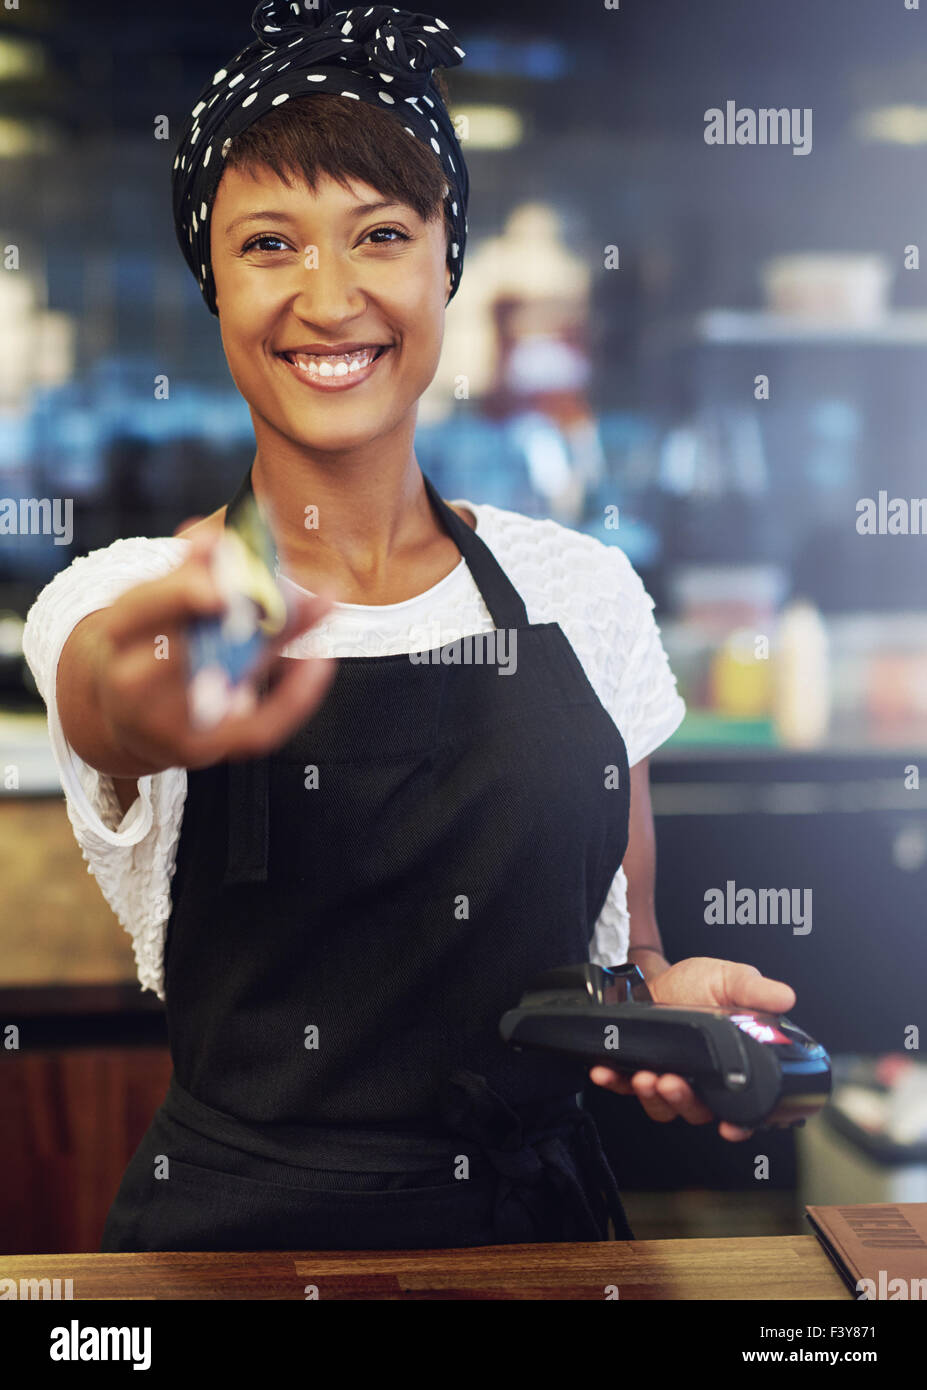 Pretty African American enthousiaste propriétaire de petite entreprise avec un joli sourire plein de vivacité rend le processus d'après une carte de crédit Banque D'Images